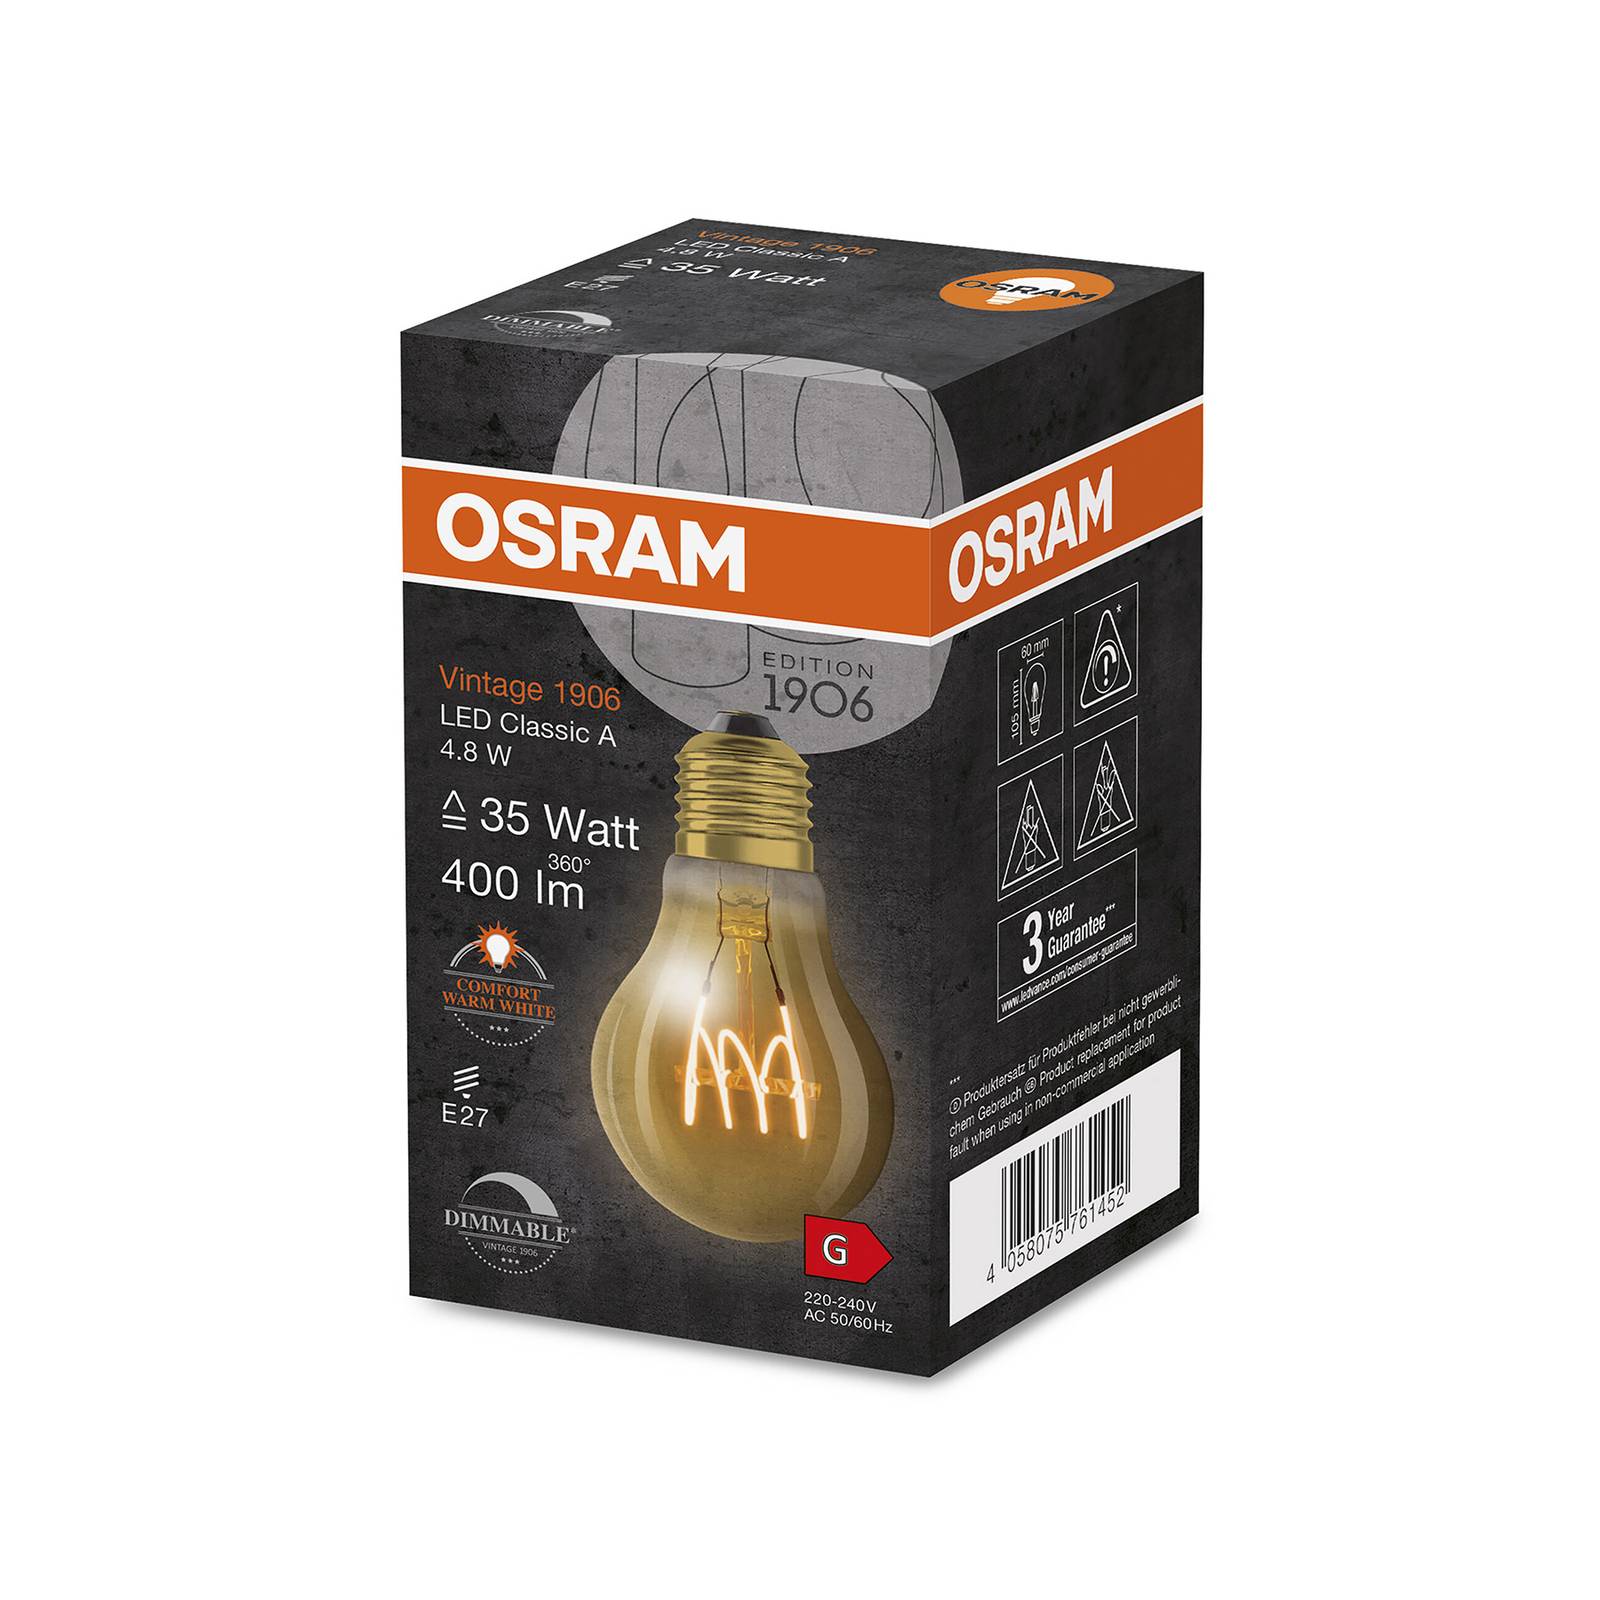 OSRAM Vintage 1906 Classic A LED E27 4,8 W or dim